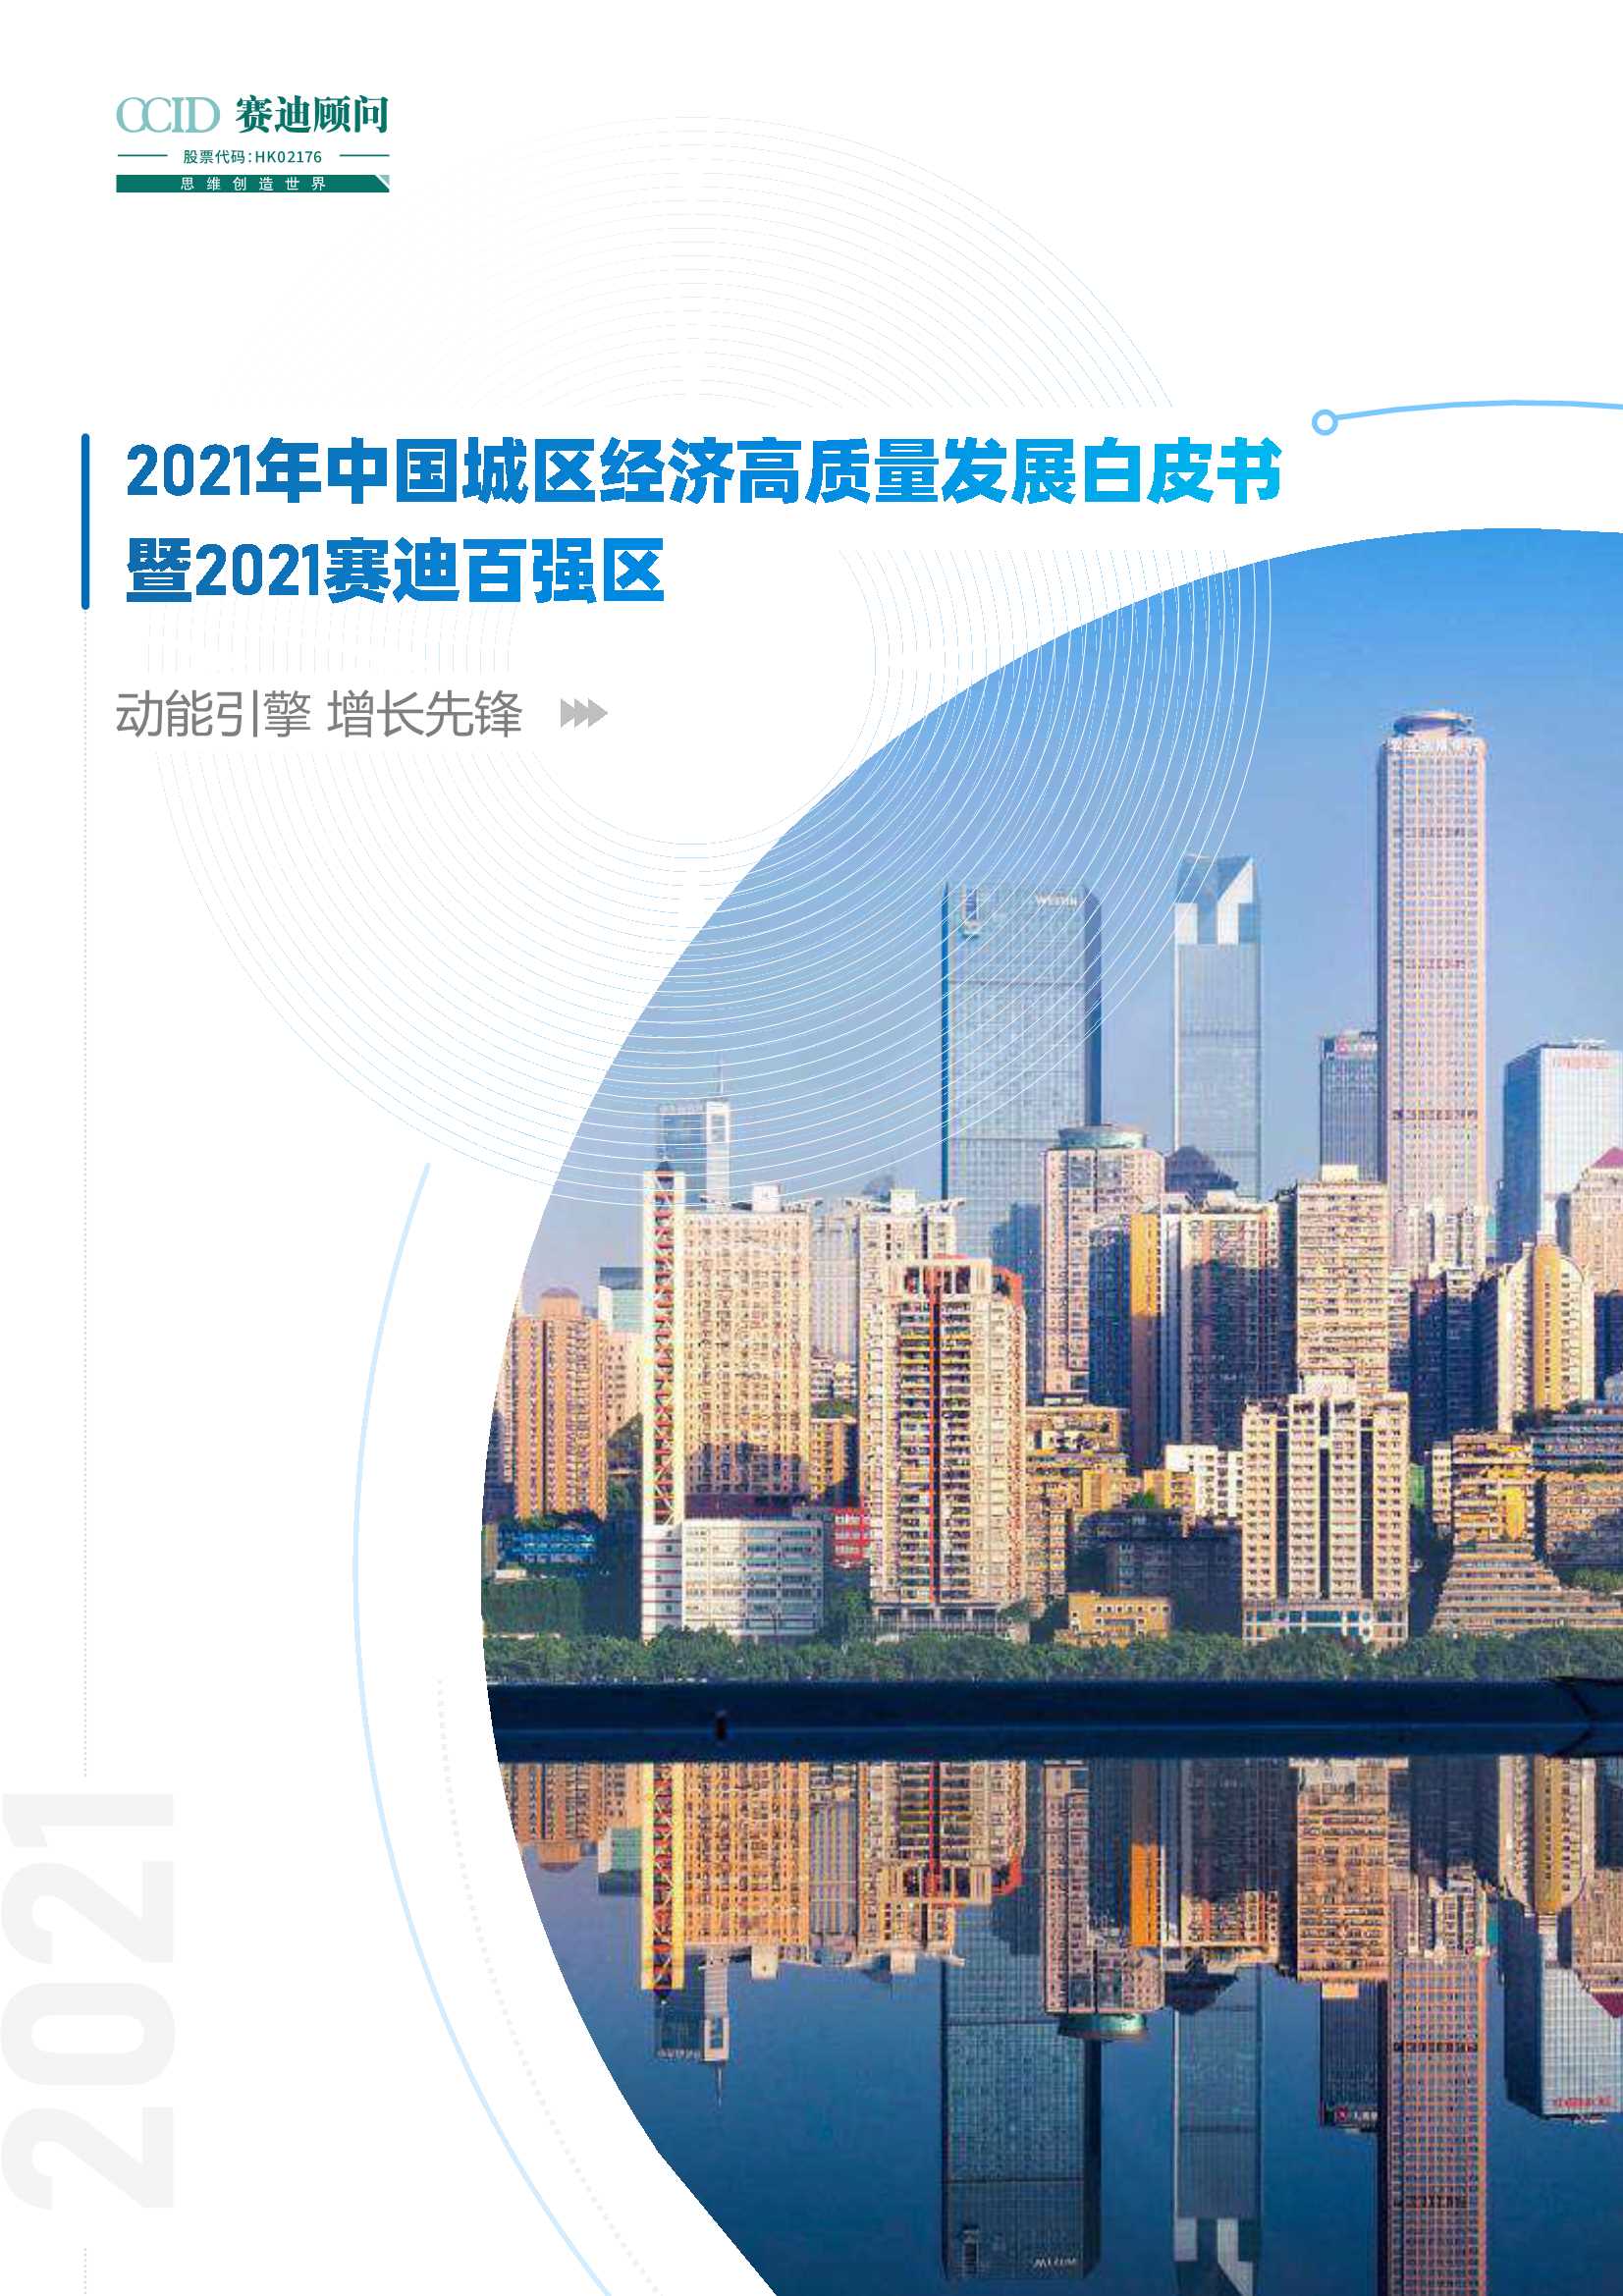 赛迪-2021年中国城区高质量发展白皮书暨赛迪百强区-2021.08-28页